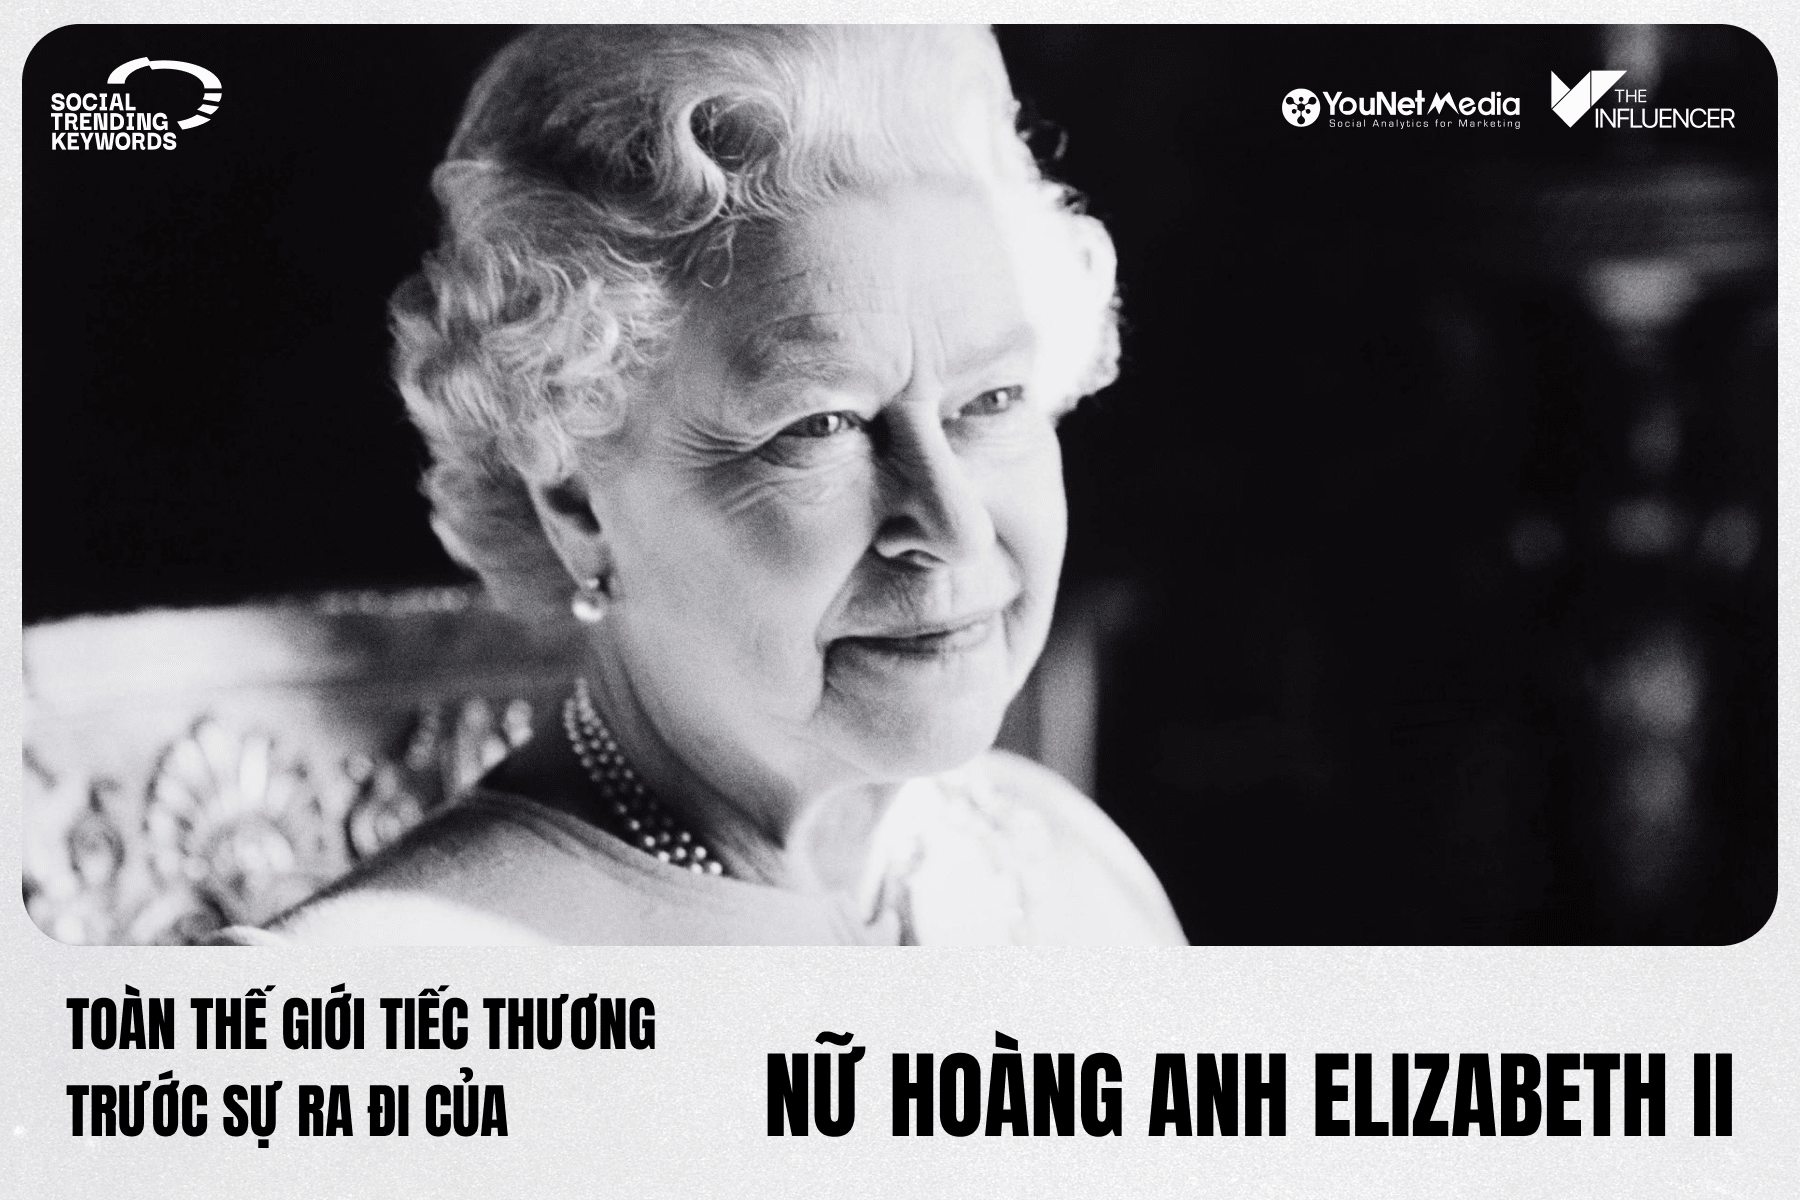 #SocialTrendingKeywords: Toàn thế giới tiếc thương trước sự ra đi của Nữ Hoàng Anh Elizabeth II